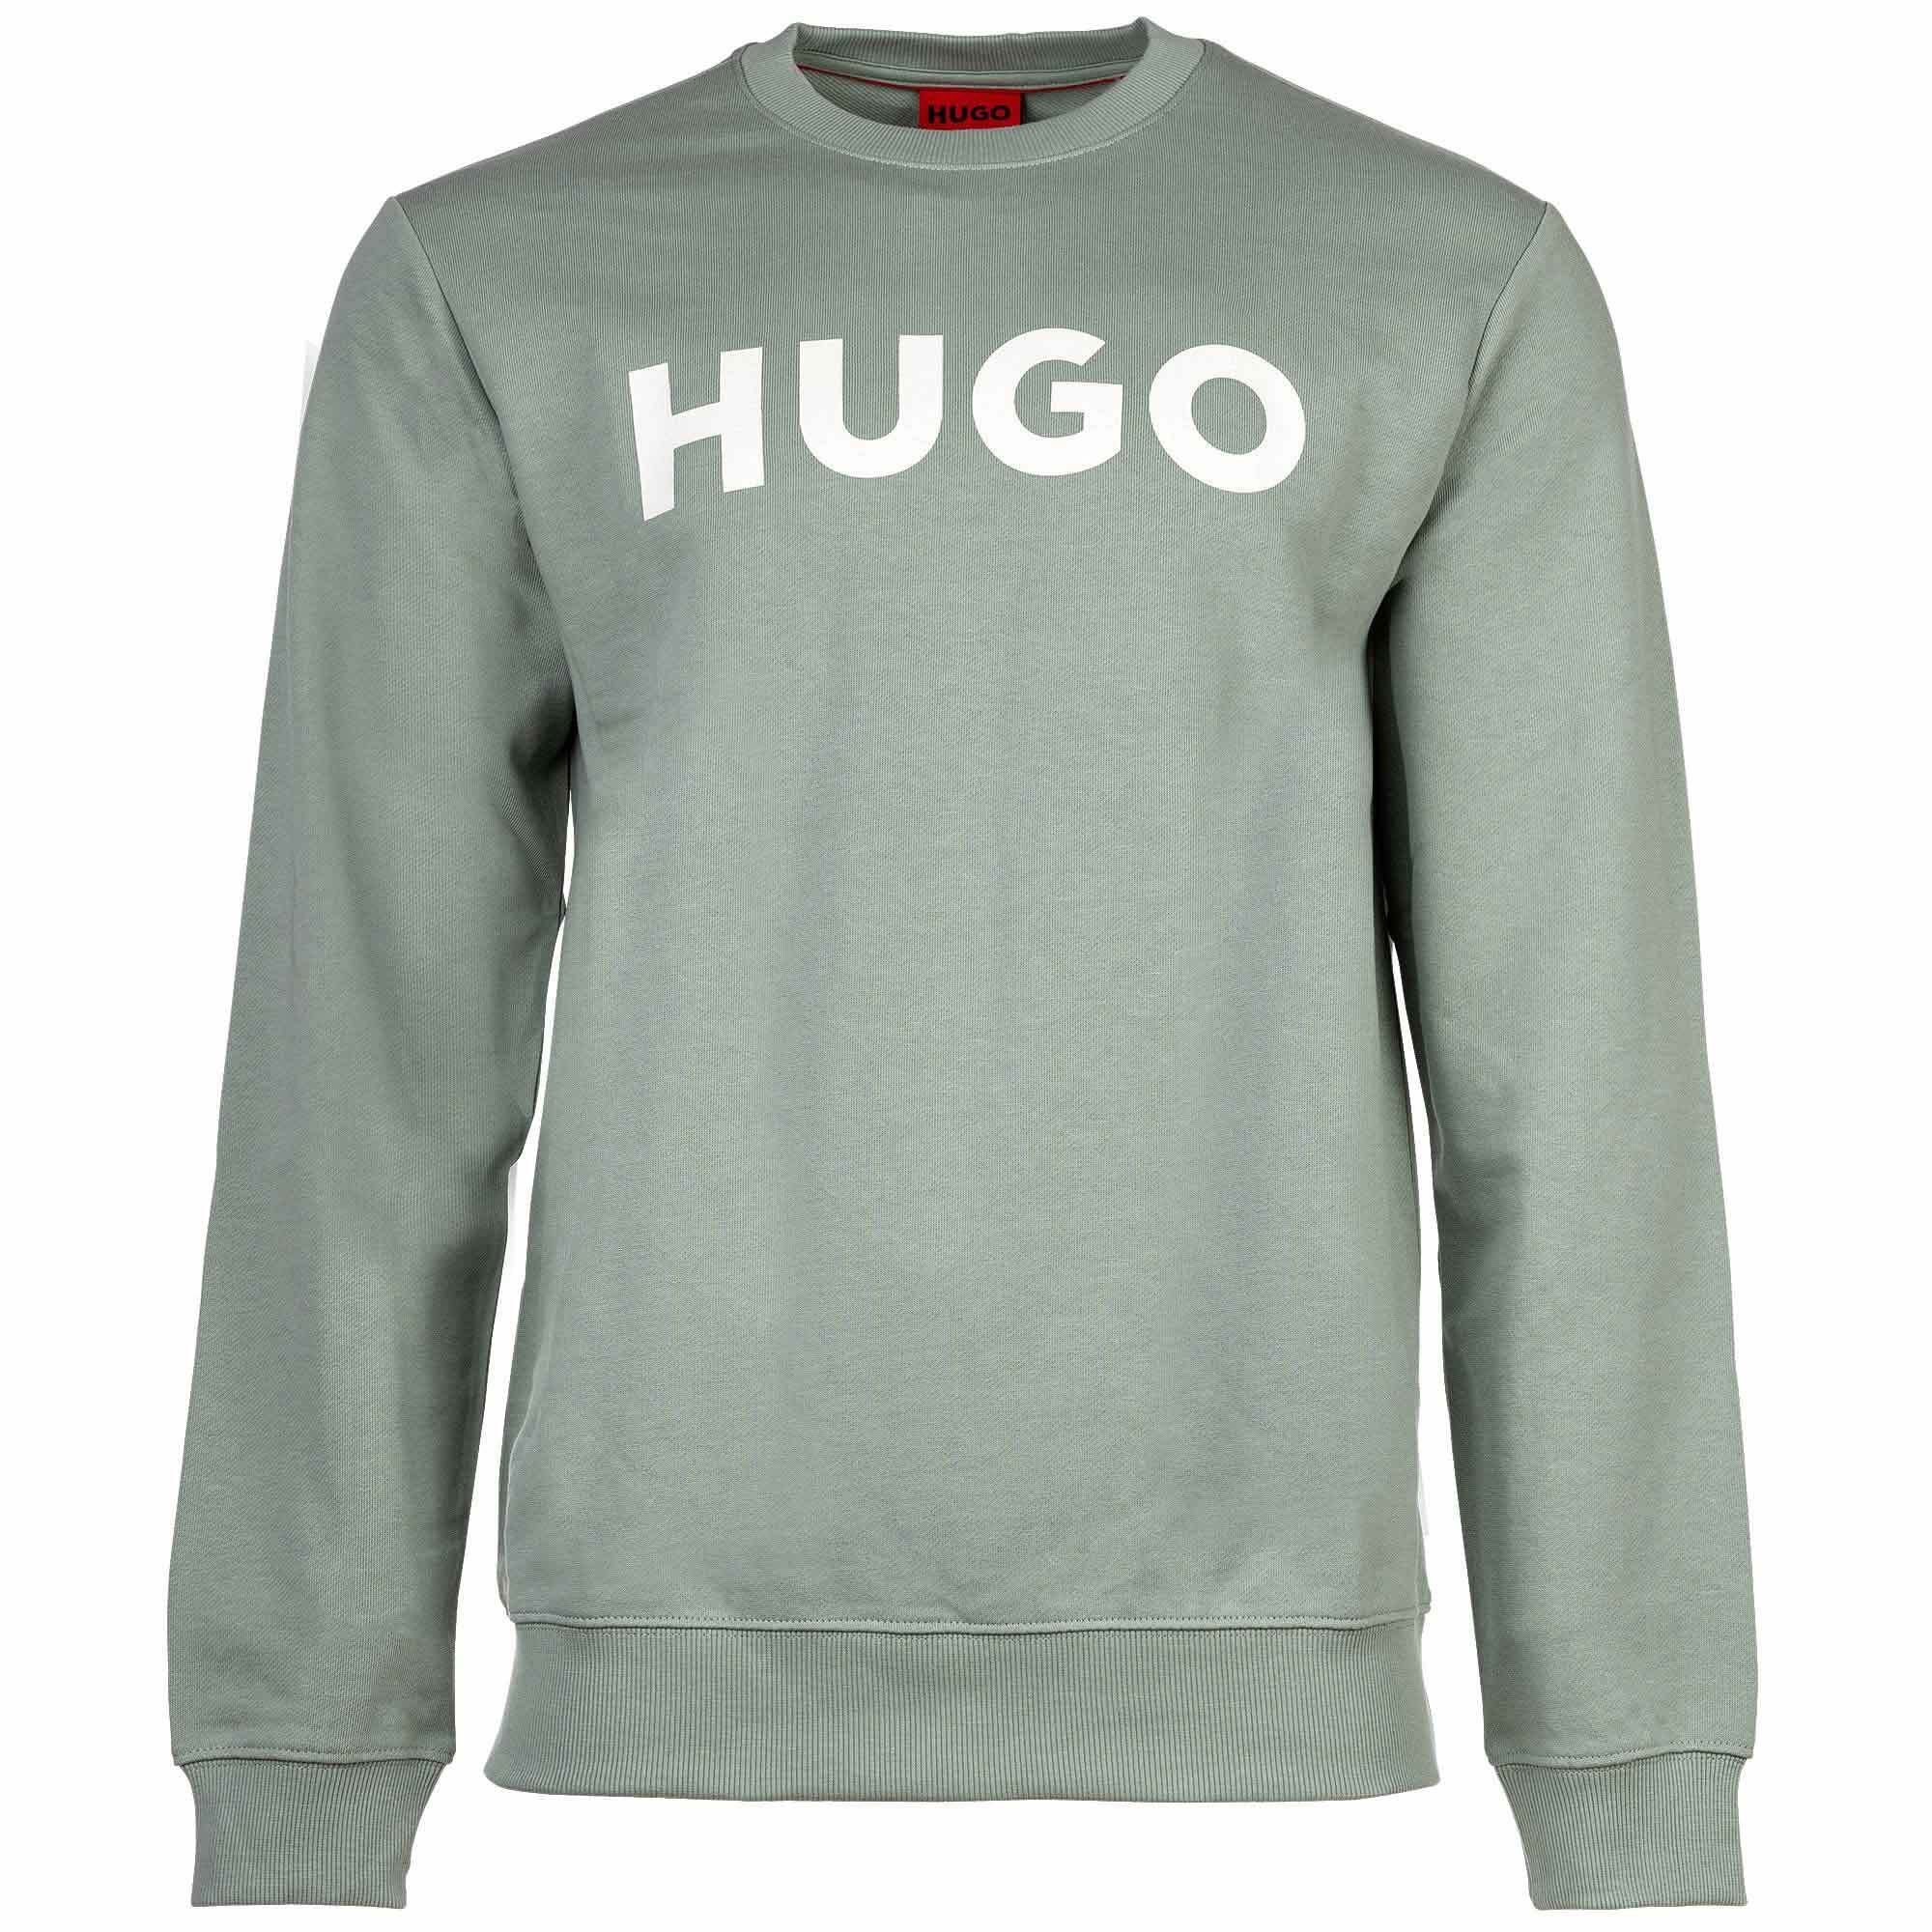 HUGO Sweatshirt Herren Sweater - DEM, Sweatshirt, Rundhals, French Grün